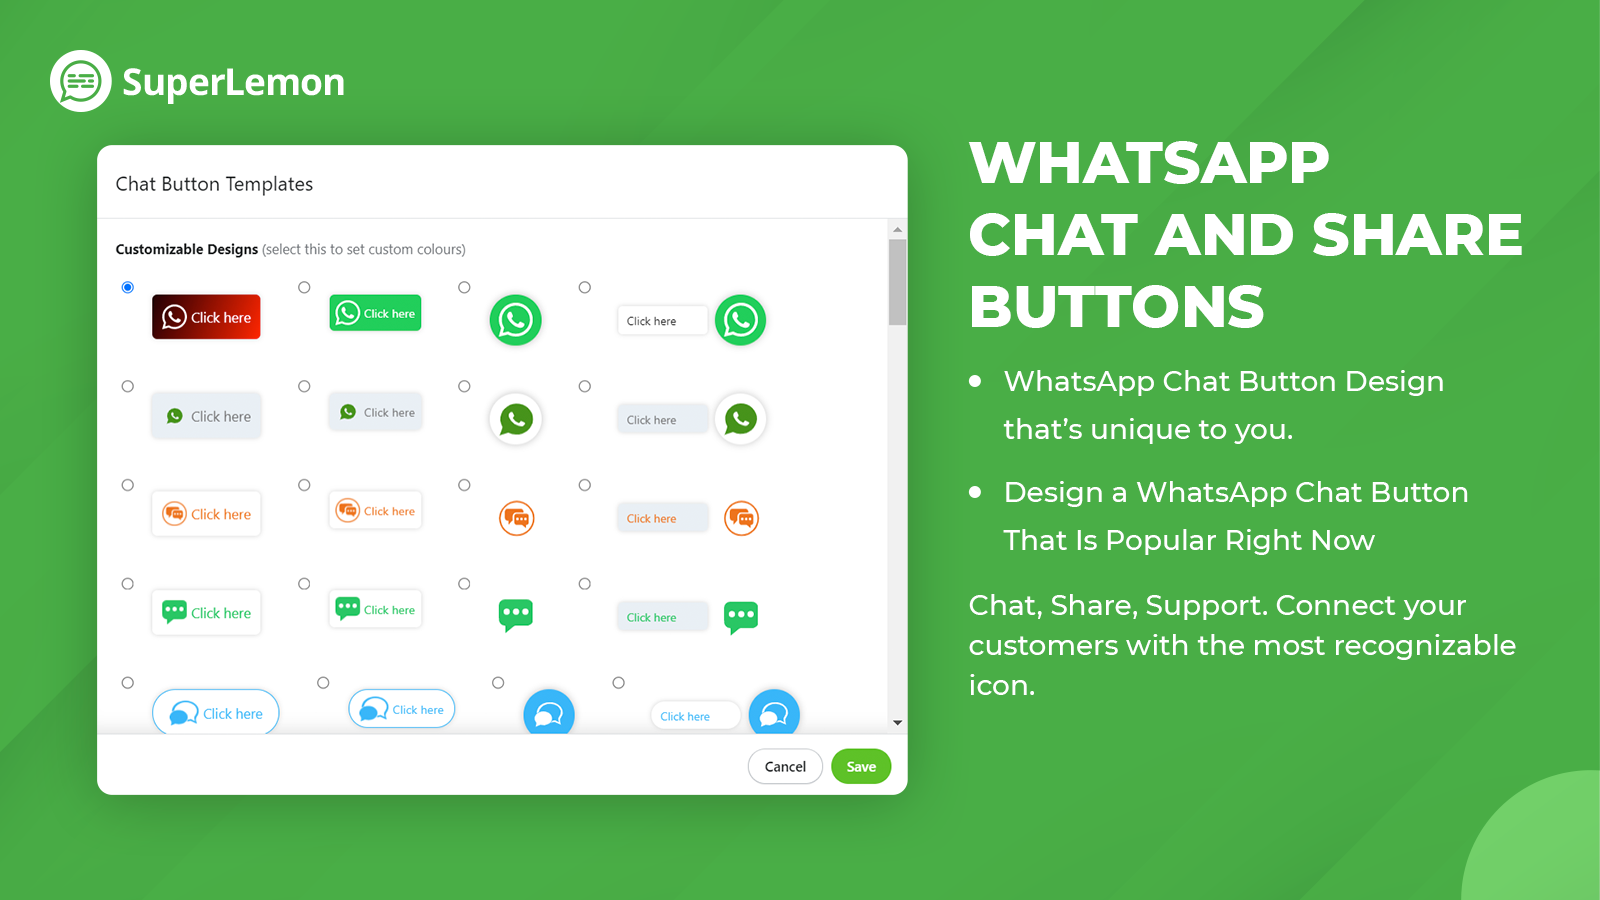 WhatsApp Chat en Share Buttons